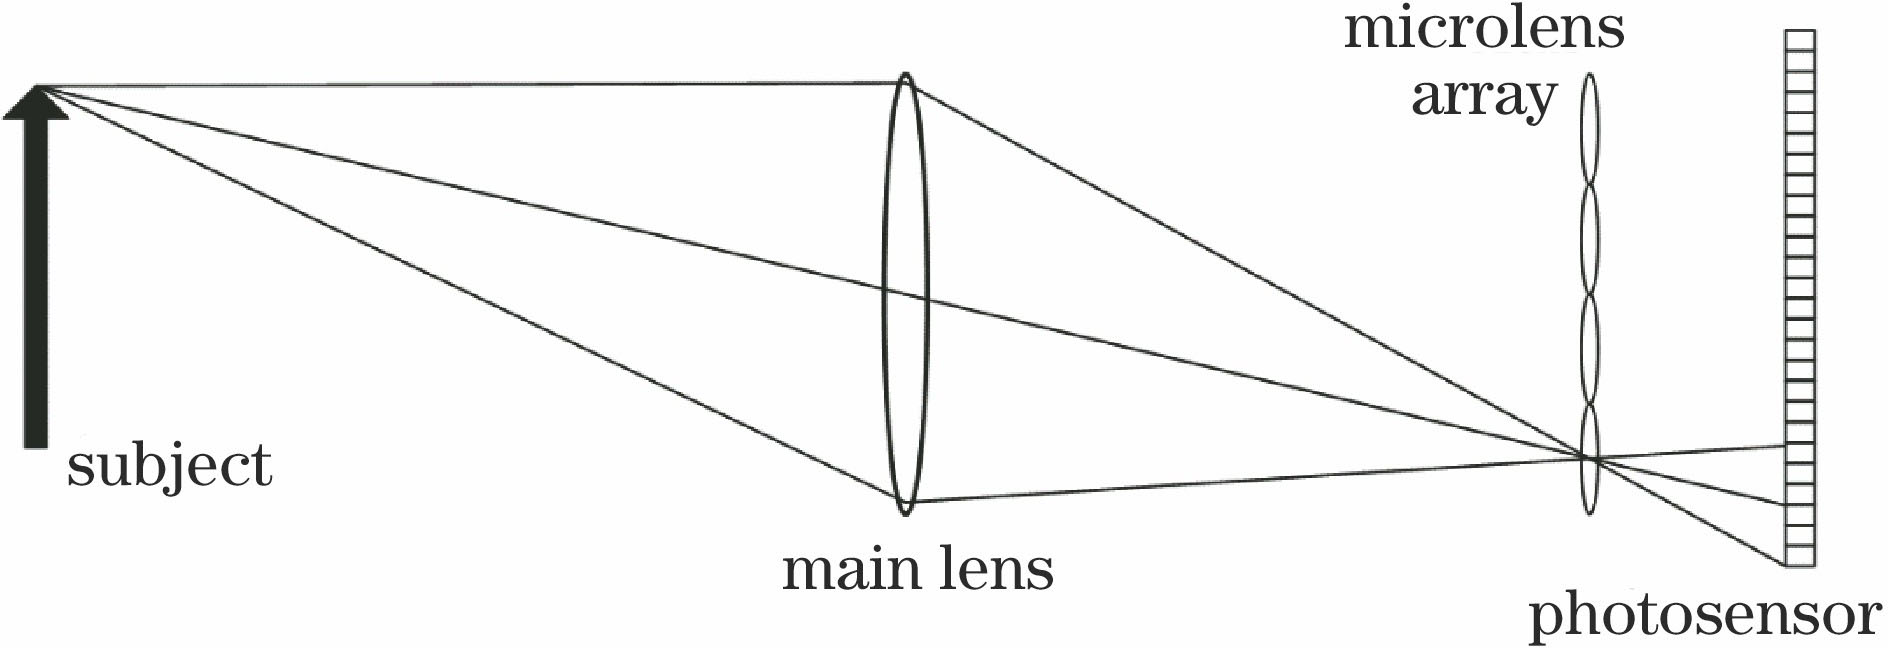 Principle diagram of optical field imaging